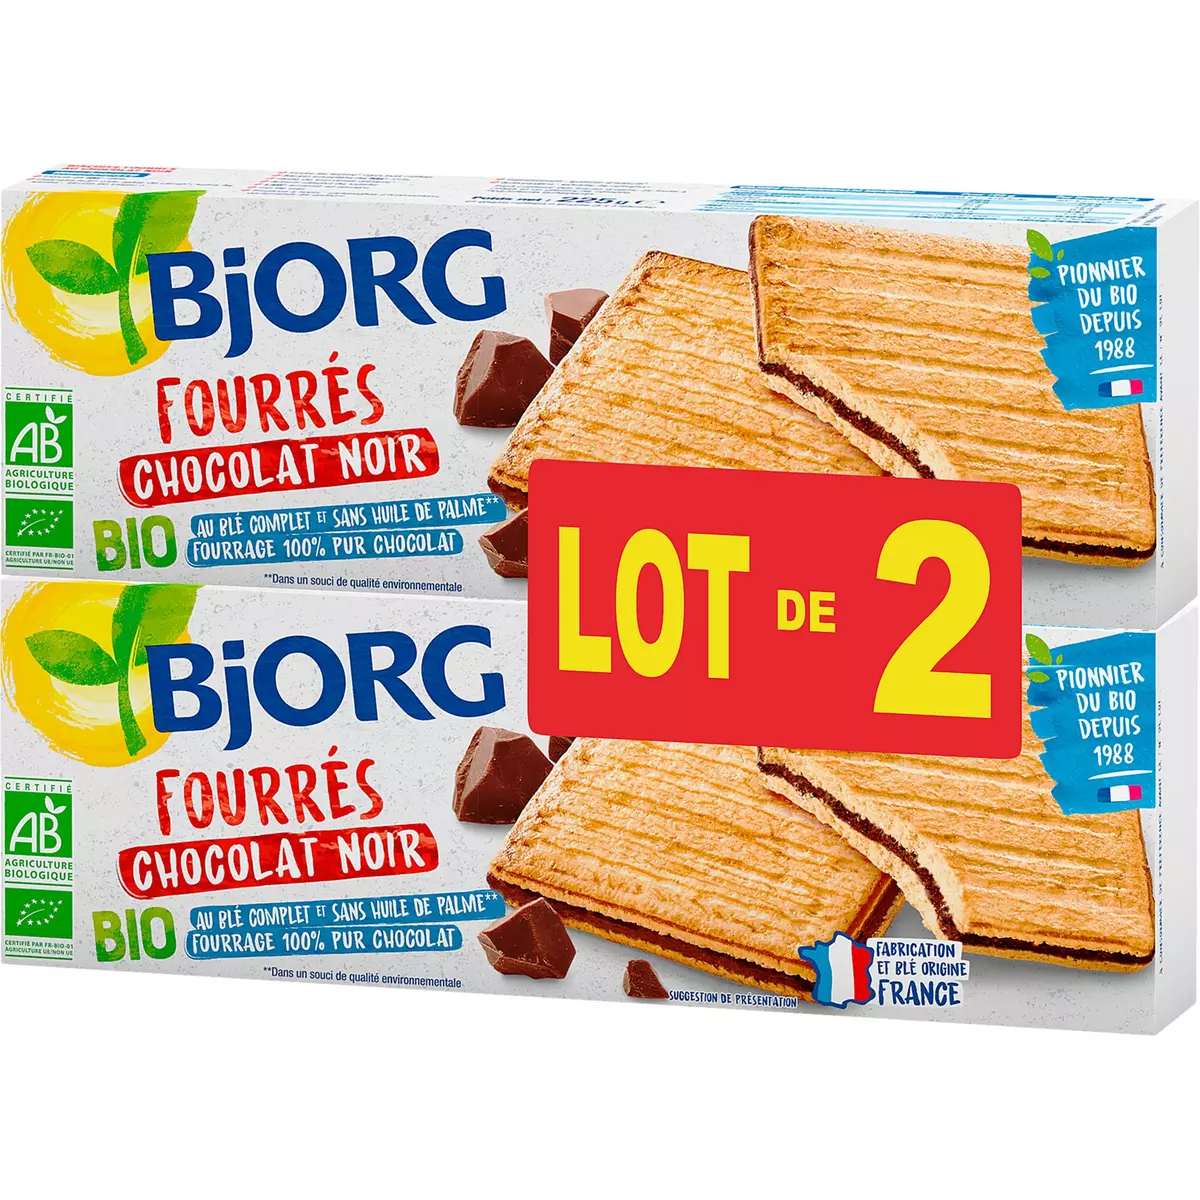 BJORG Biscuits fourrés au chocolat noir bio 2x225g